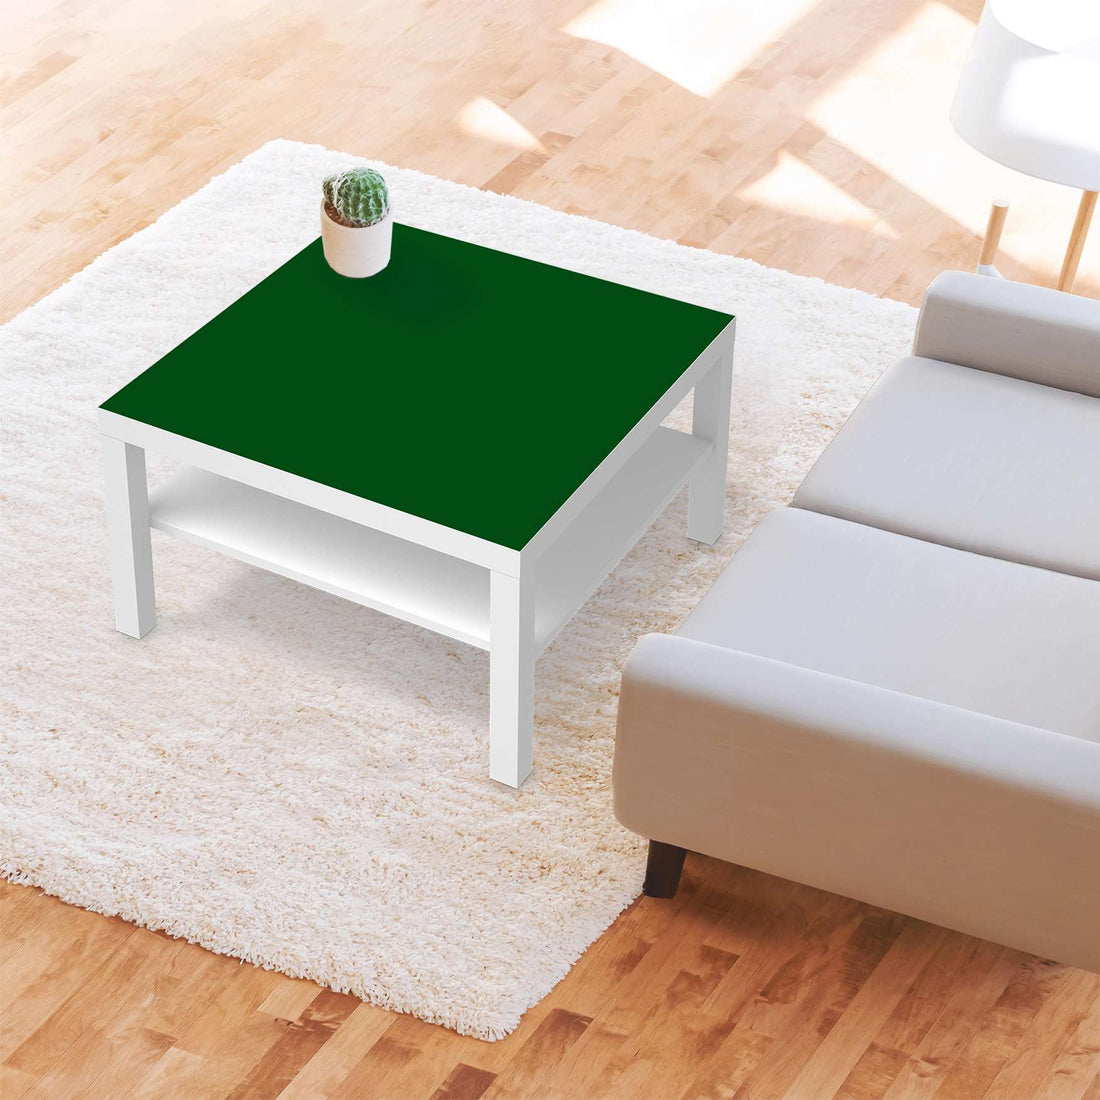 Selbstklebende Folie Grün Dark - IKEA Lack Tisch 78x78 cm - Wohnzimmer